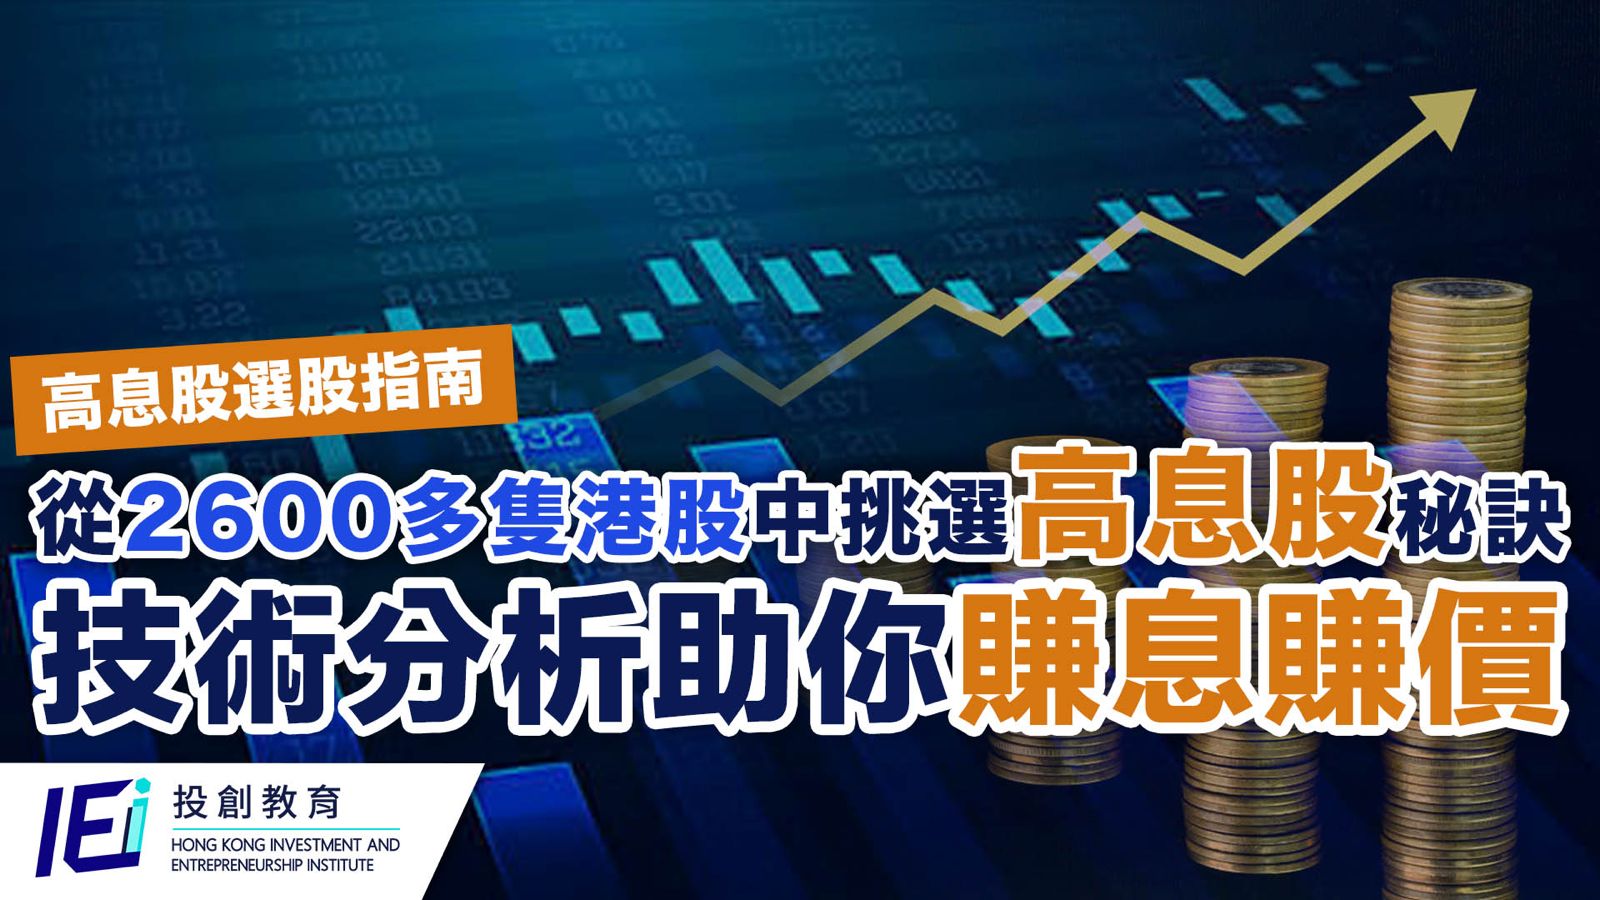 7月份是香港股票市場的派息高峰期，這為投資者提供了透過股息收益來增加投資回報的絕佳機會。然而，全港有超過2600隻股票，如何在這些股票中挑選出值博率高的高息股，做到既賺息又賺價，是每個投資者關注的焦點。本文將從技術分析的角度，探討如何挑選高息股，以幫助投資者在股息高峰期中獲取最佳回報。